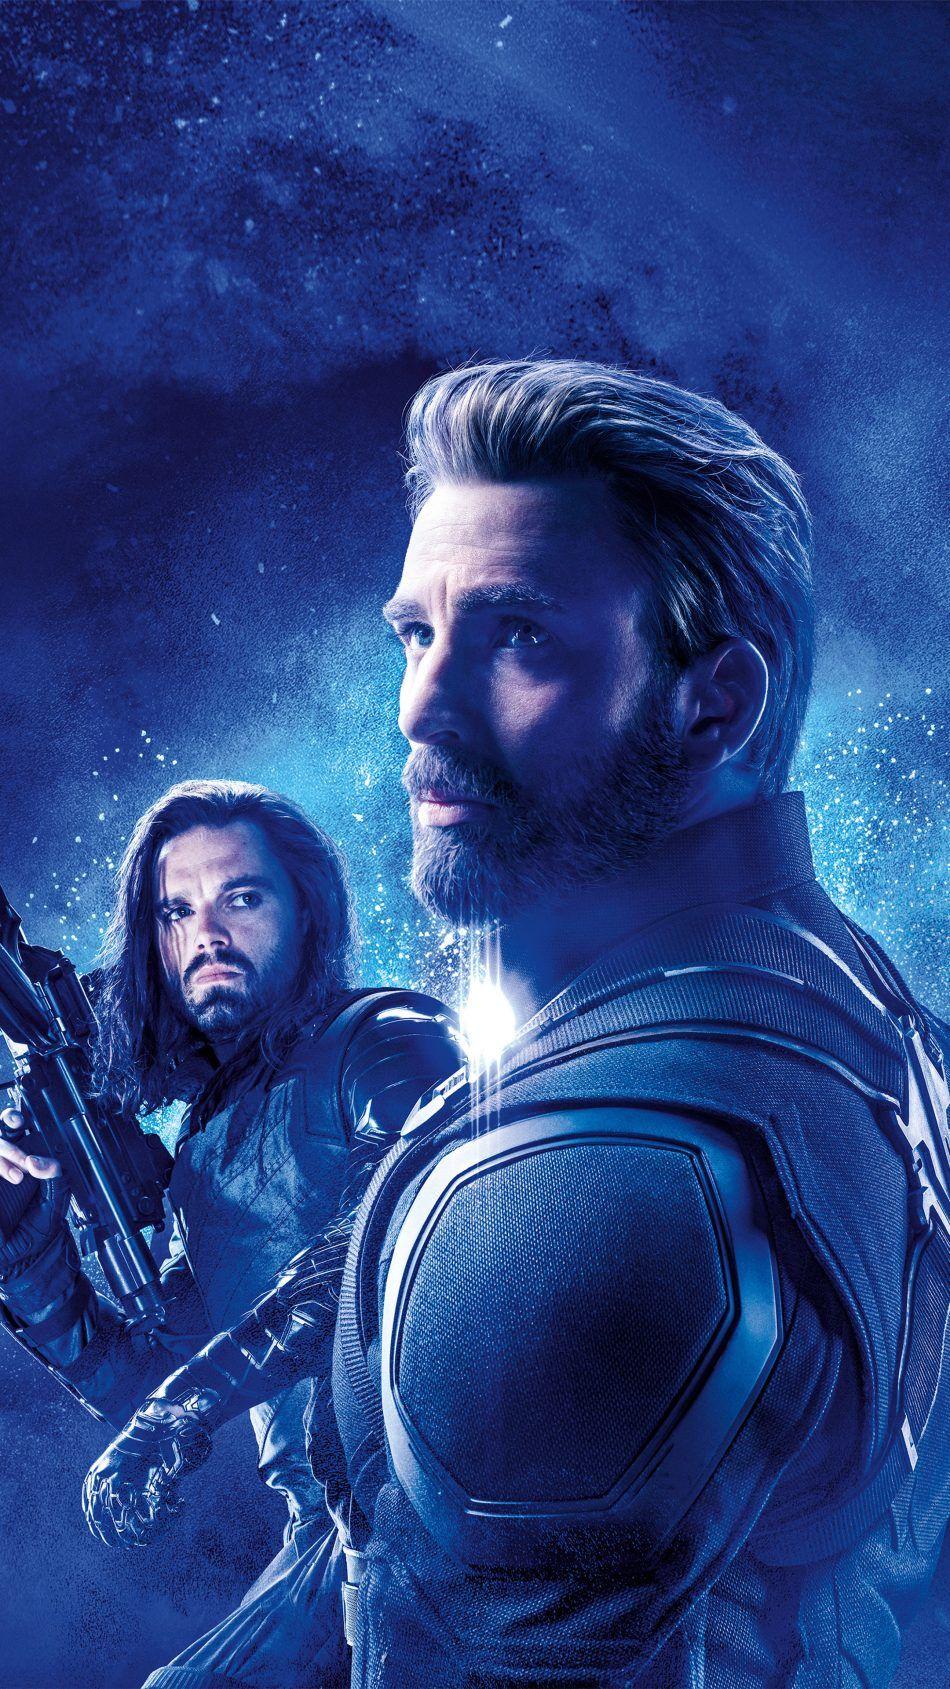 Captain America & Bucky Barnes In Avengers Endgame 4K Ultra HD Mobile Wallpaper. Captain america and bucky, Avengers, Bucky barnes